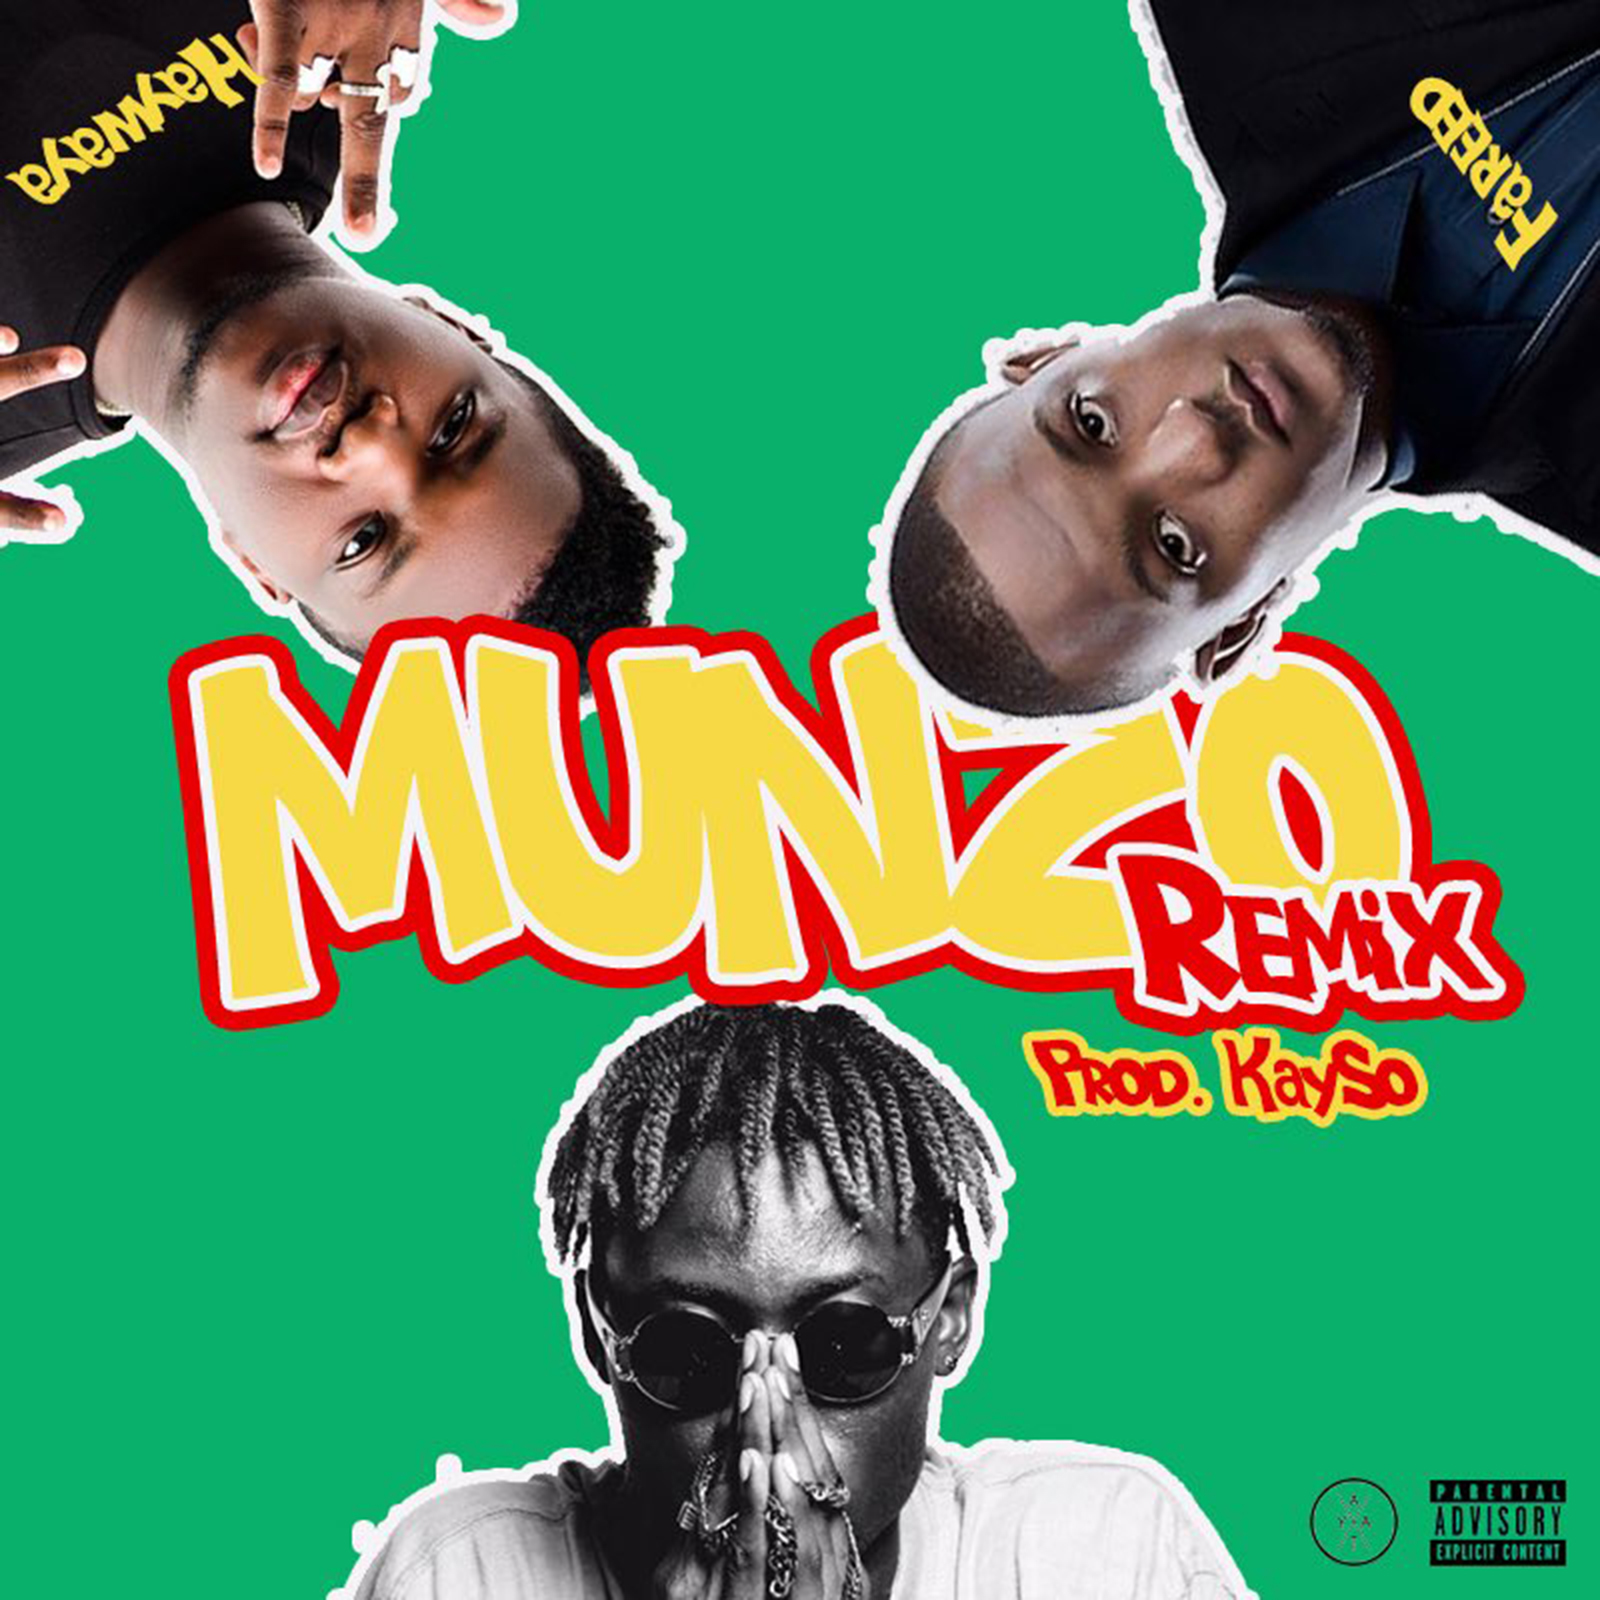 Munzo Remix by AYAT feat. Fareed & Hawaya